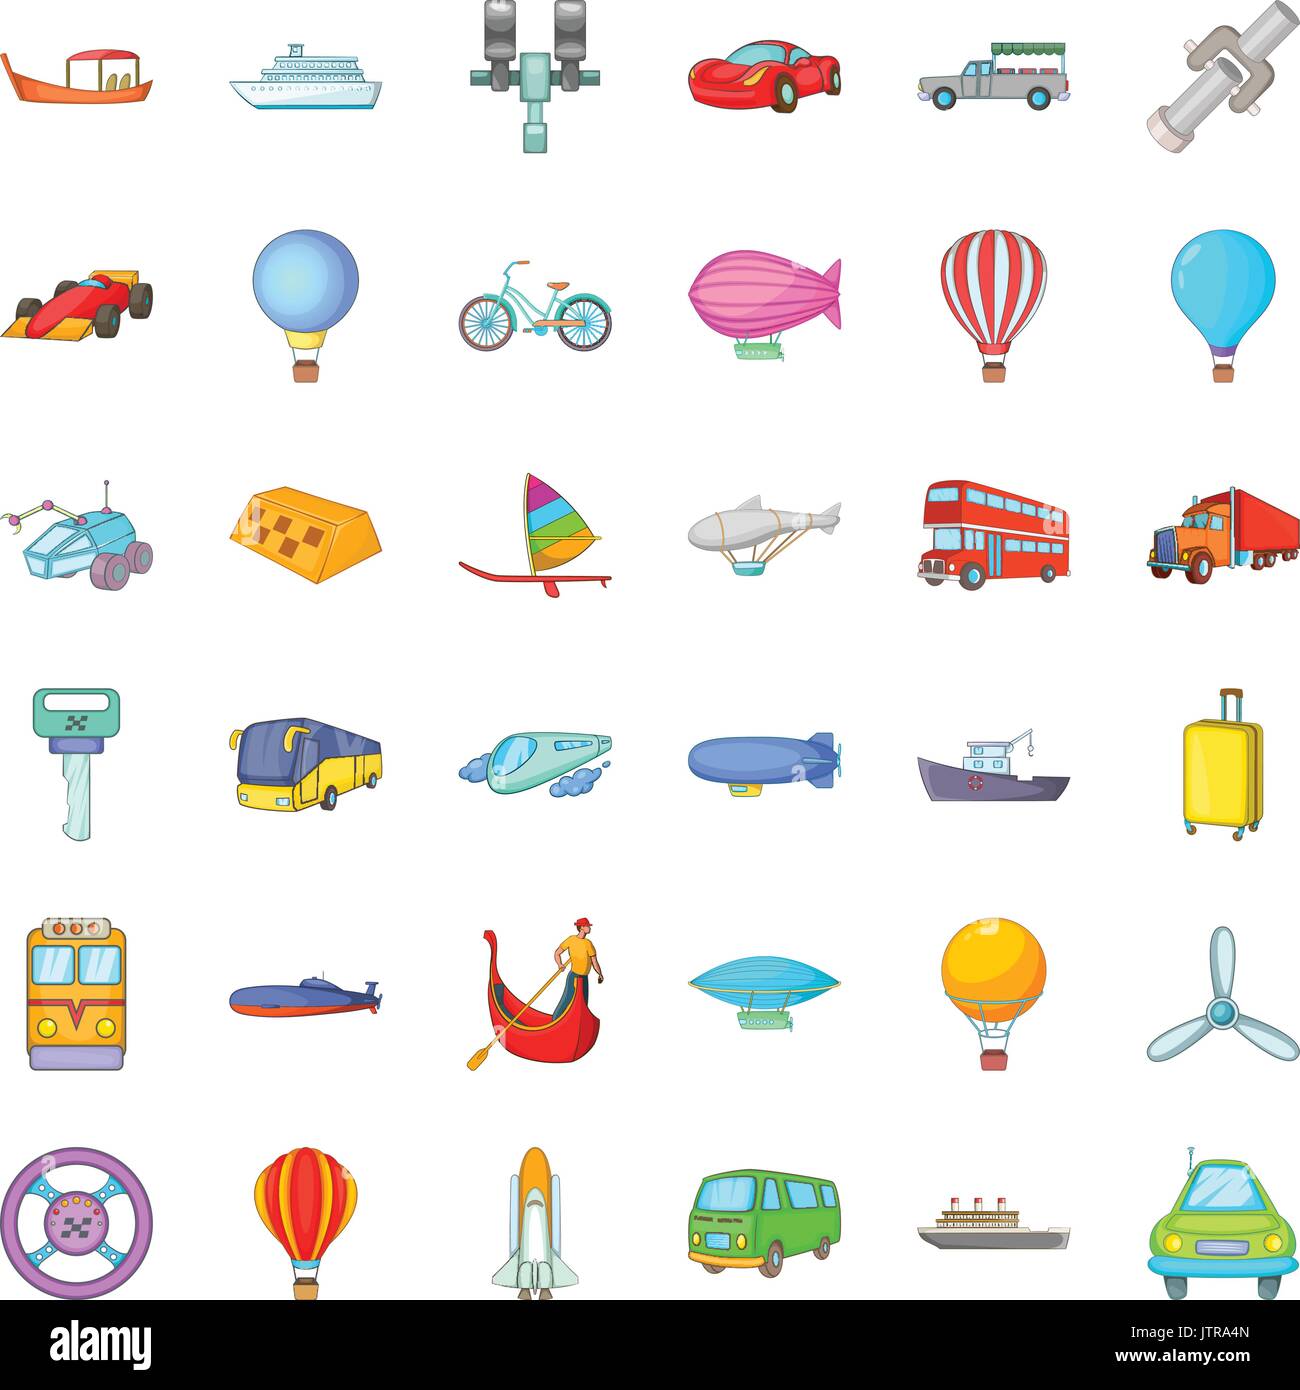 Conjunto De Iconos De Transporte Maritimo Del Estilo De Dibujos Animados Imagen Vector De Stock Alamy